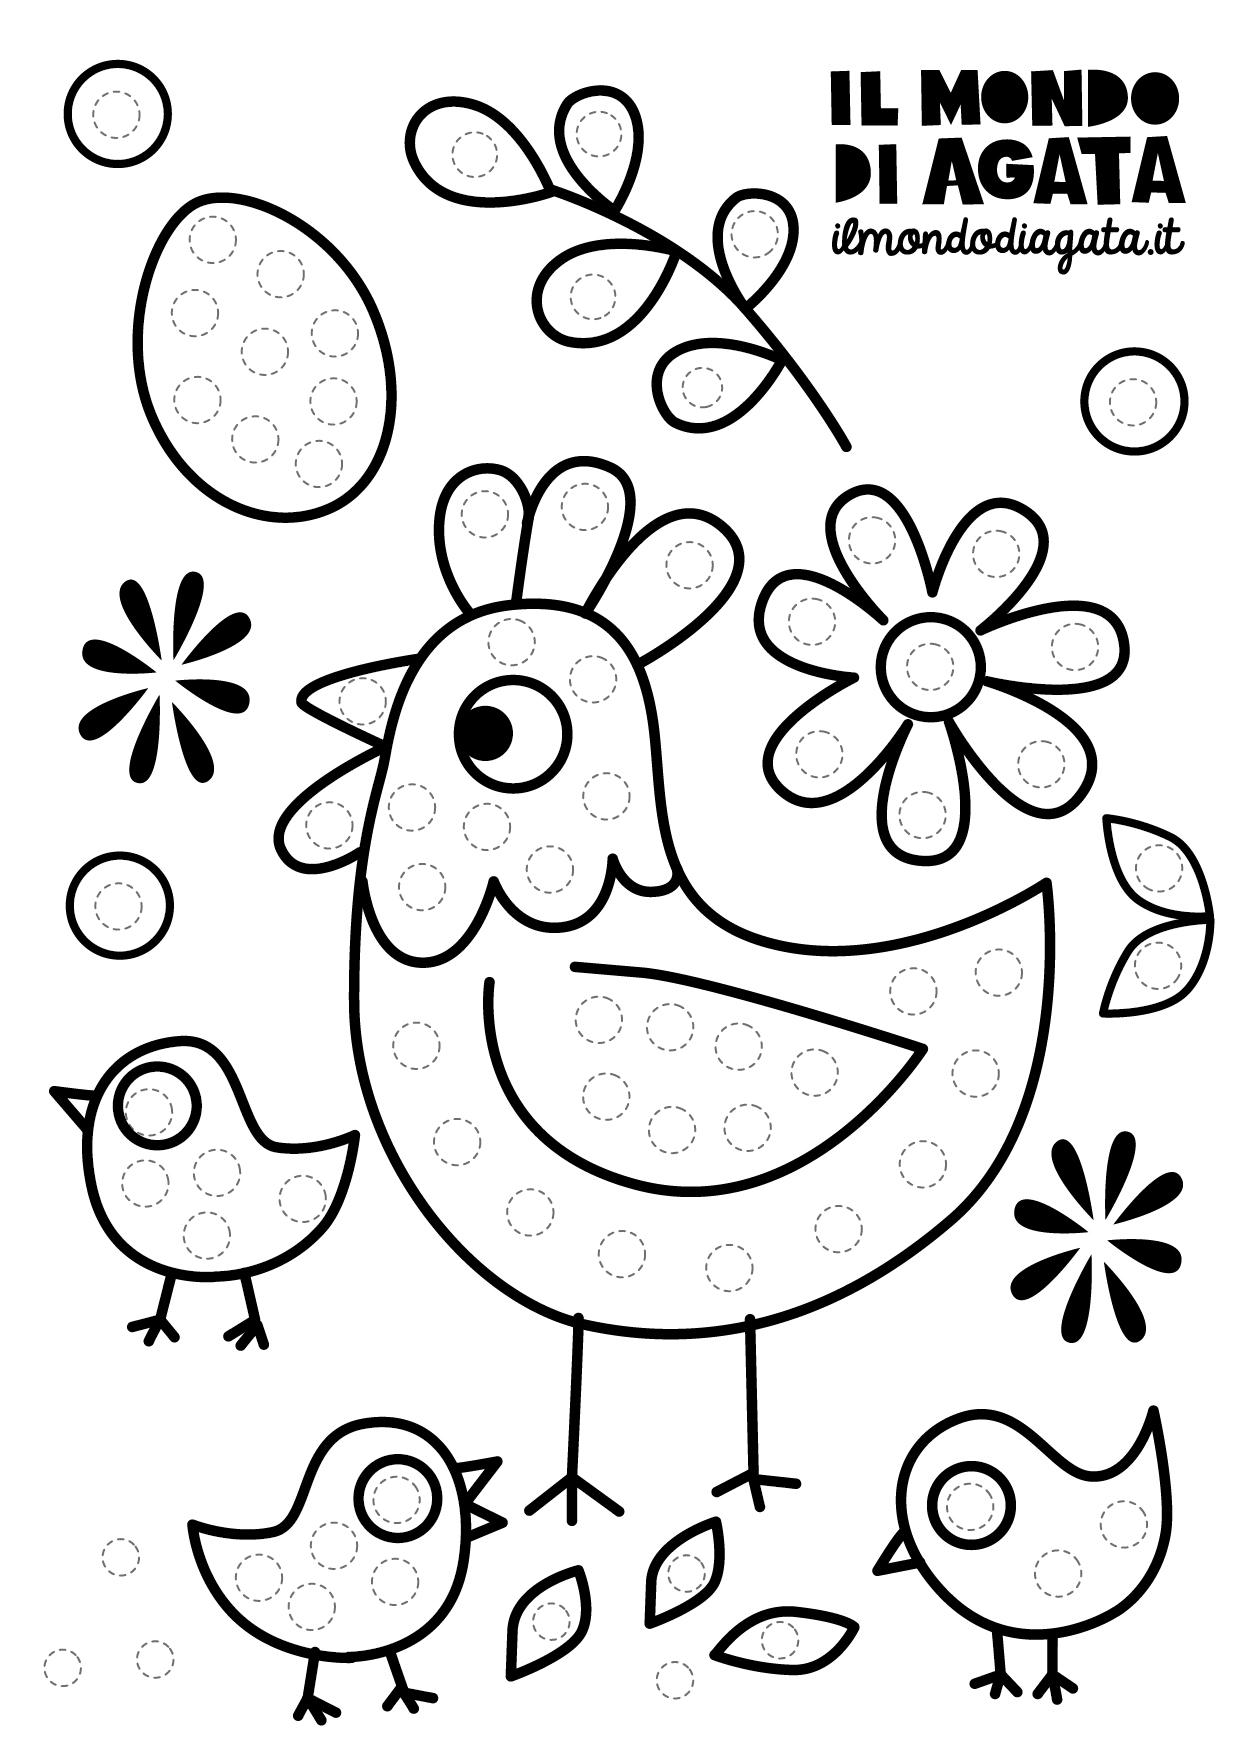 Scarica gratis: Disegni da colorare a pois - gallina